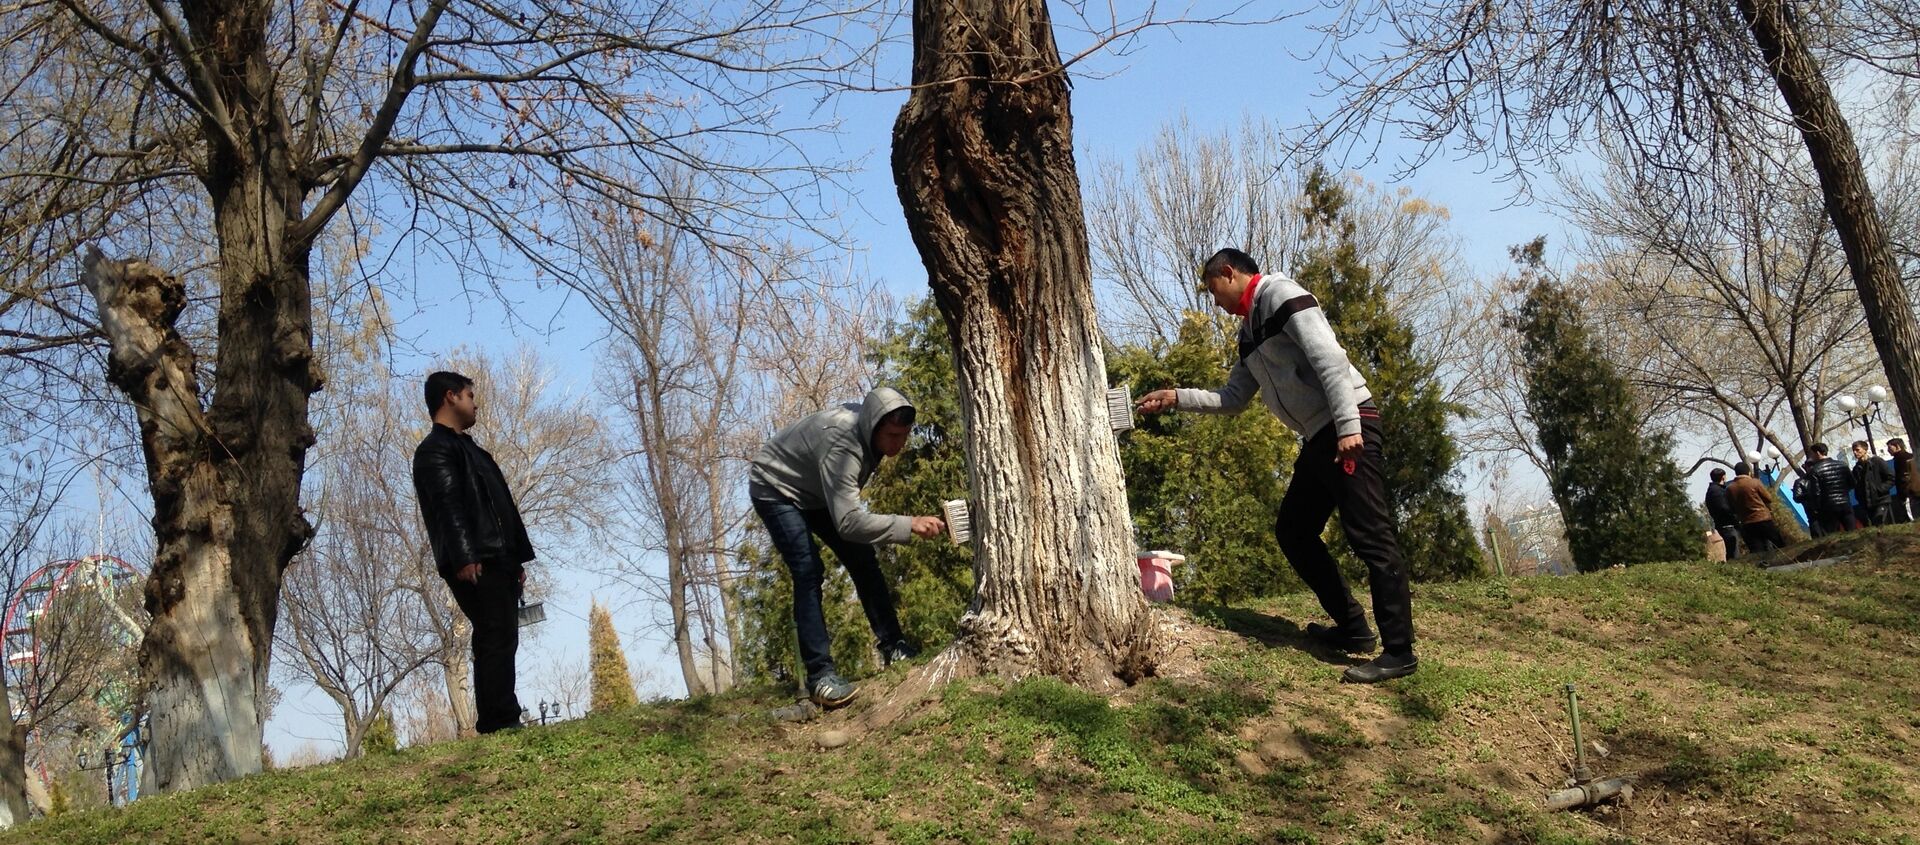 В Парке Абдуллы Кадыри стволы деревьев белят известью, чтобы защитить их от насекомых и других вредителей, а также, чтобы сохранить его от солнечных ожогов. - Sputnik Узбекистан, 1920, 23.11.2020